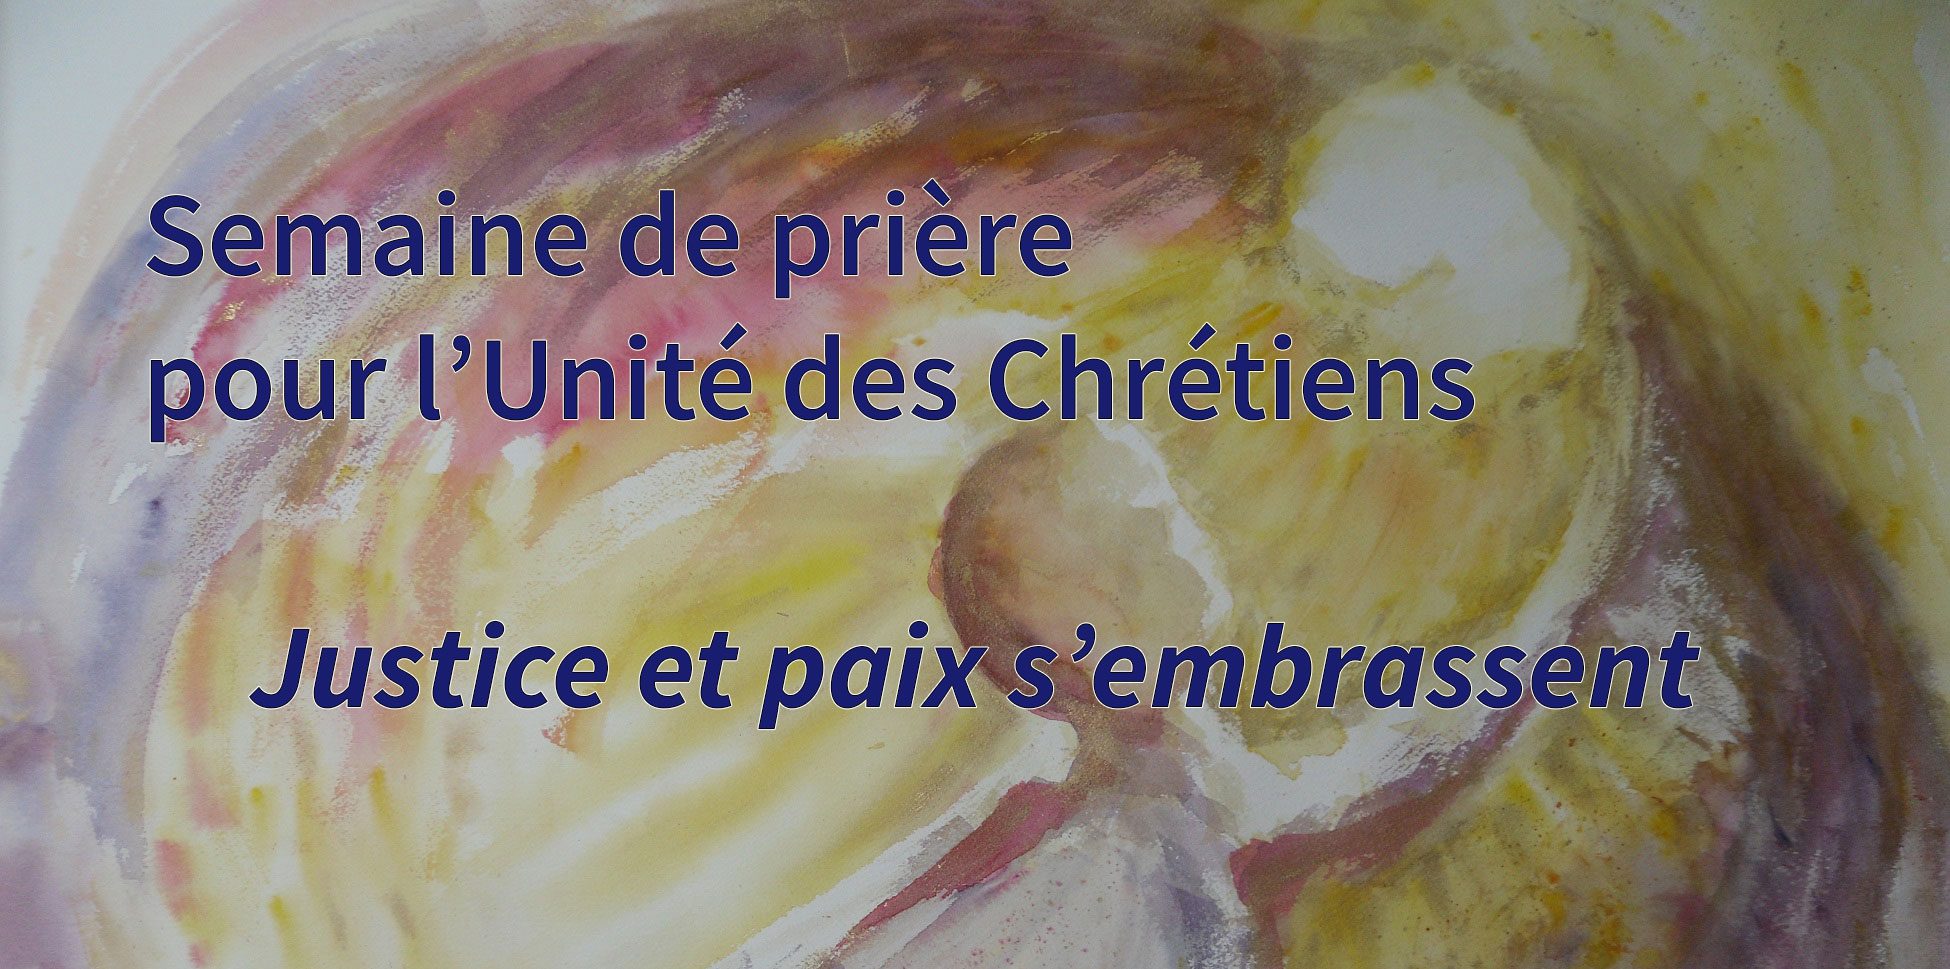 Unité des Chrétiens: Les relations œcuméniques de M. Portal